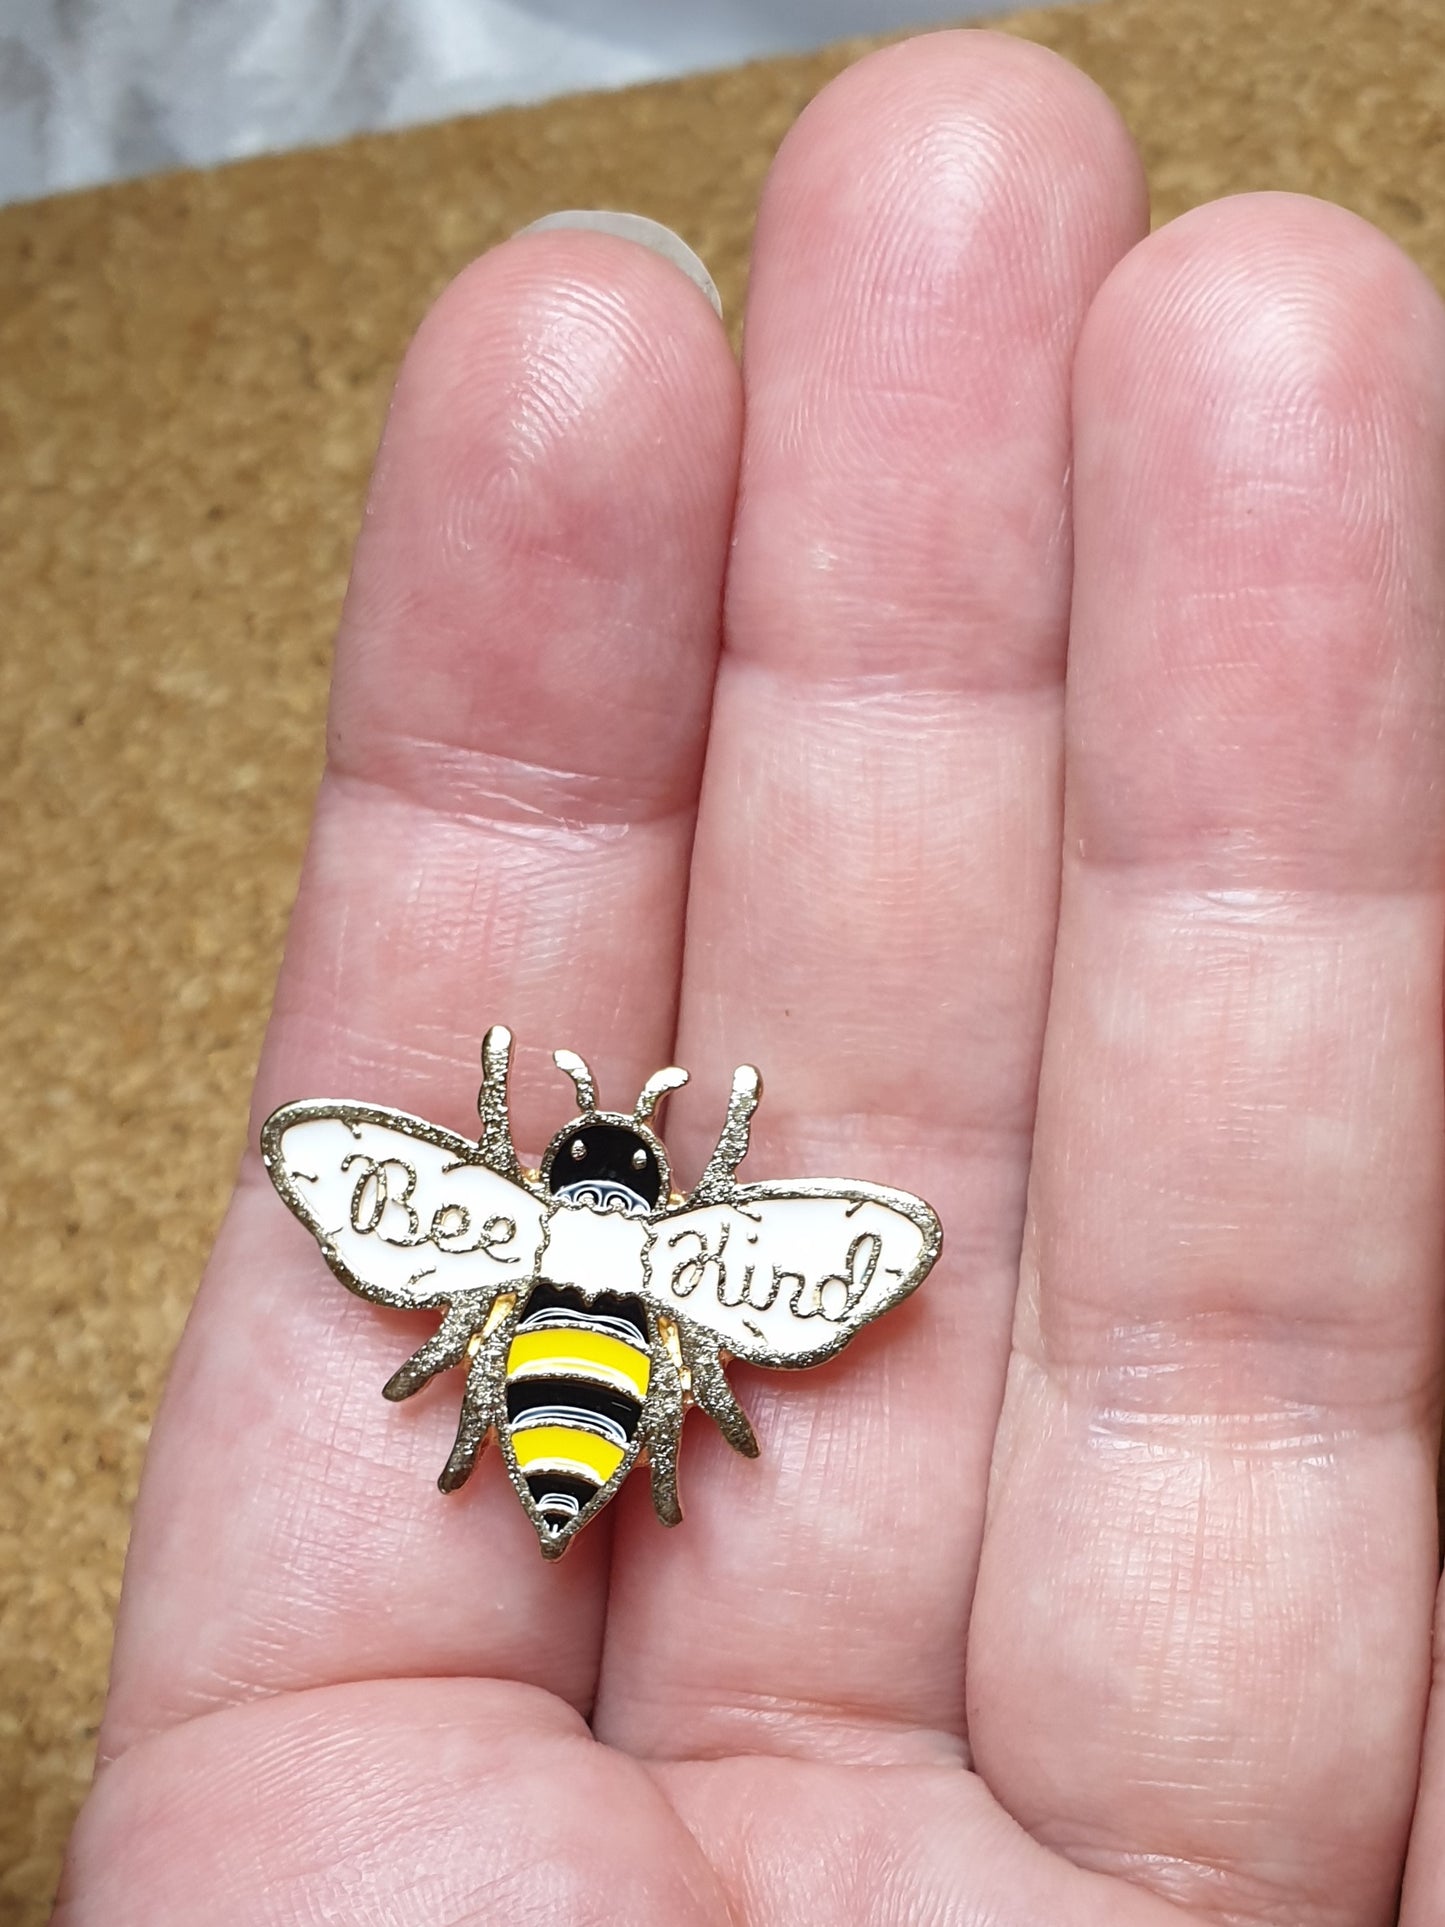 Bee Kind pin